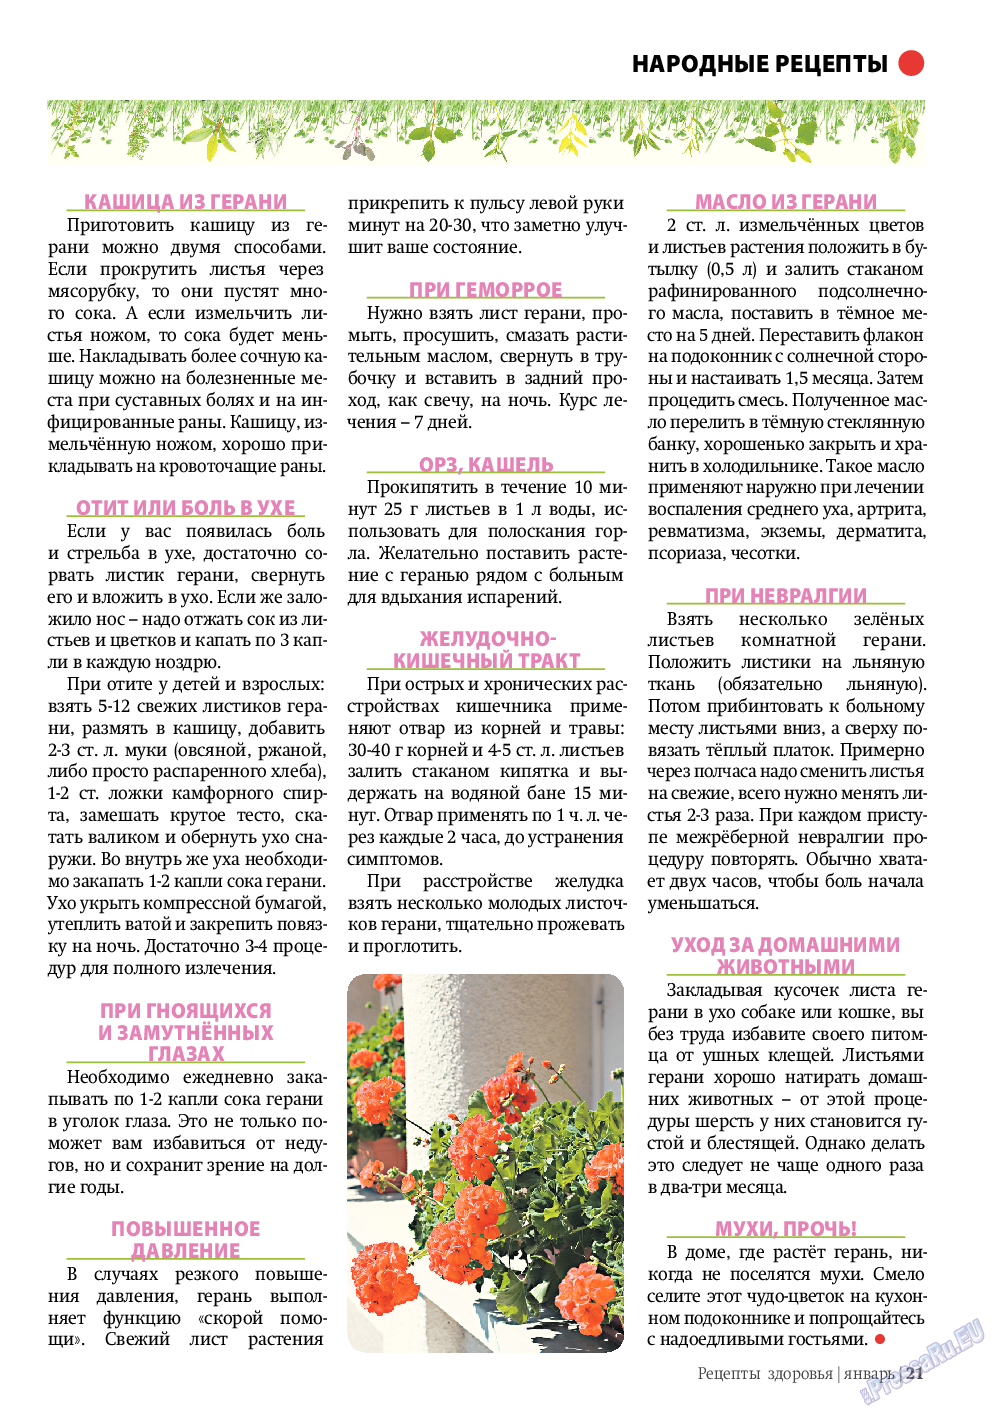 Рецепты здоровья, журнал. 2012 №1 стр.21